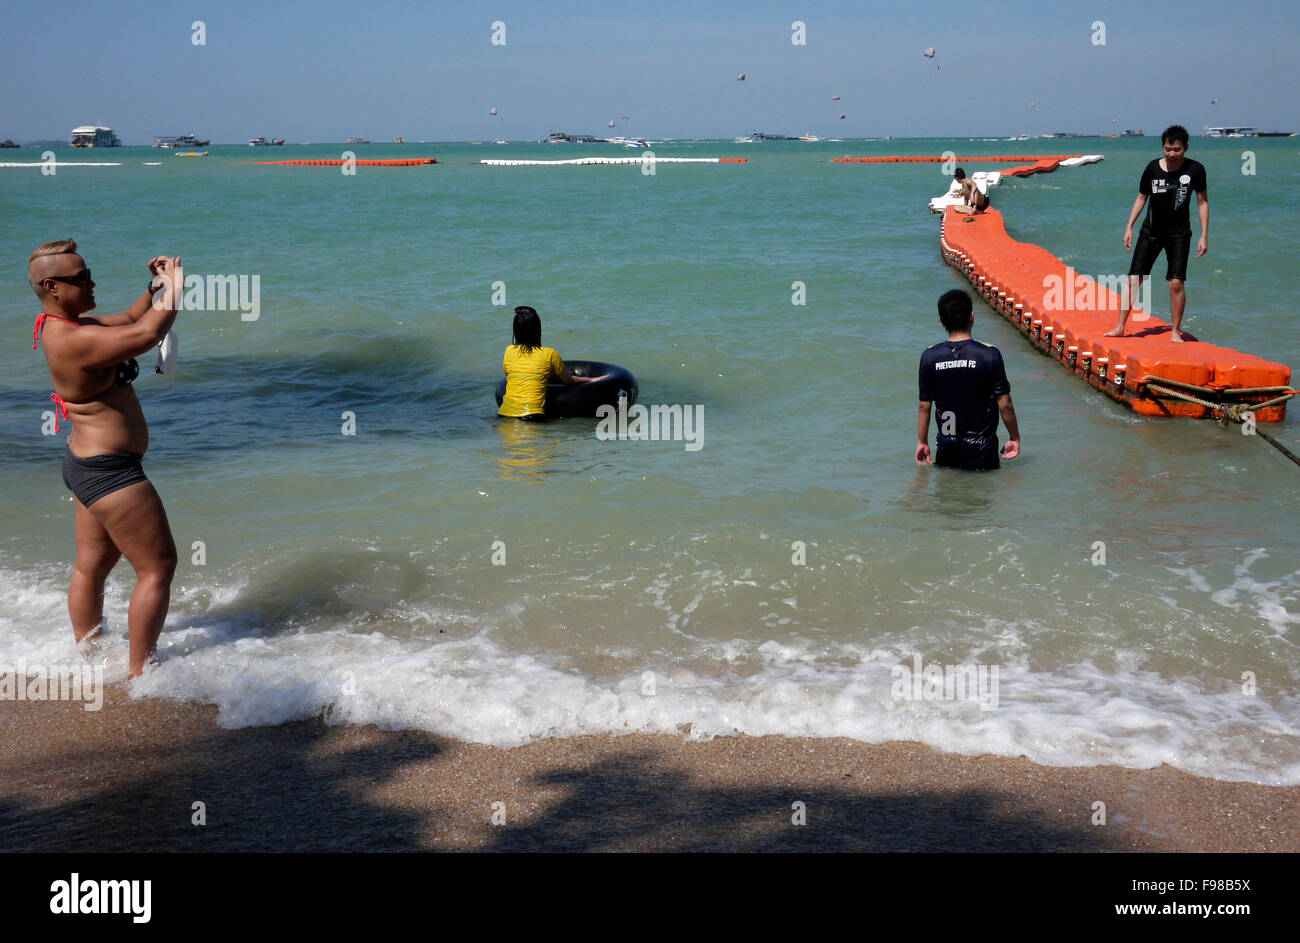 Un coffre-fort est marqué par des bouées sur les corps flottants reliés / plage de Pattaya Thailande pour protéger les baigneurs de jet skis etc Banque D'Images